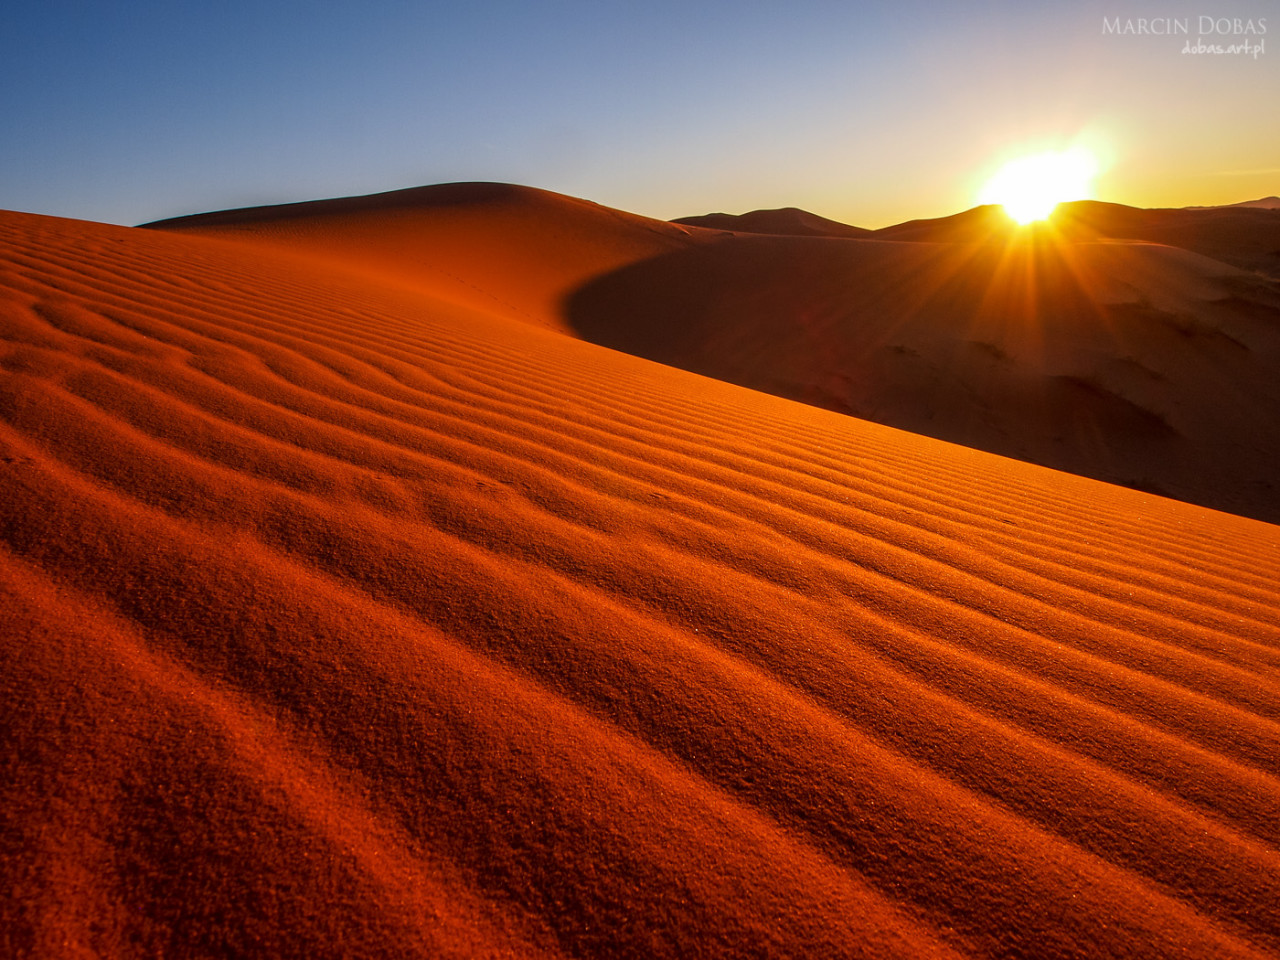 Sand dunes of Erg Chebbi in the Sahara Desert, Morocco.